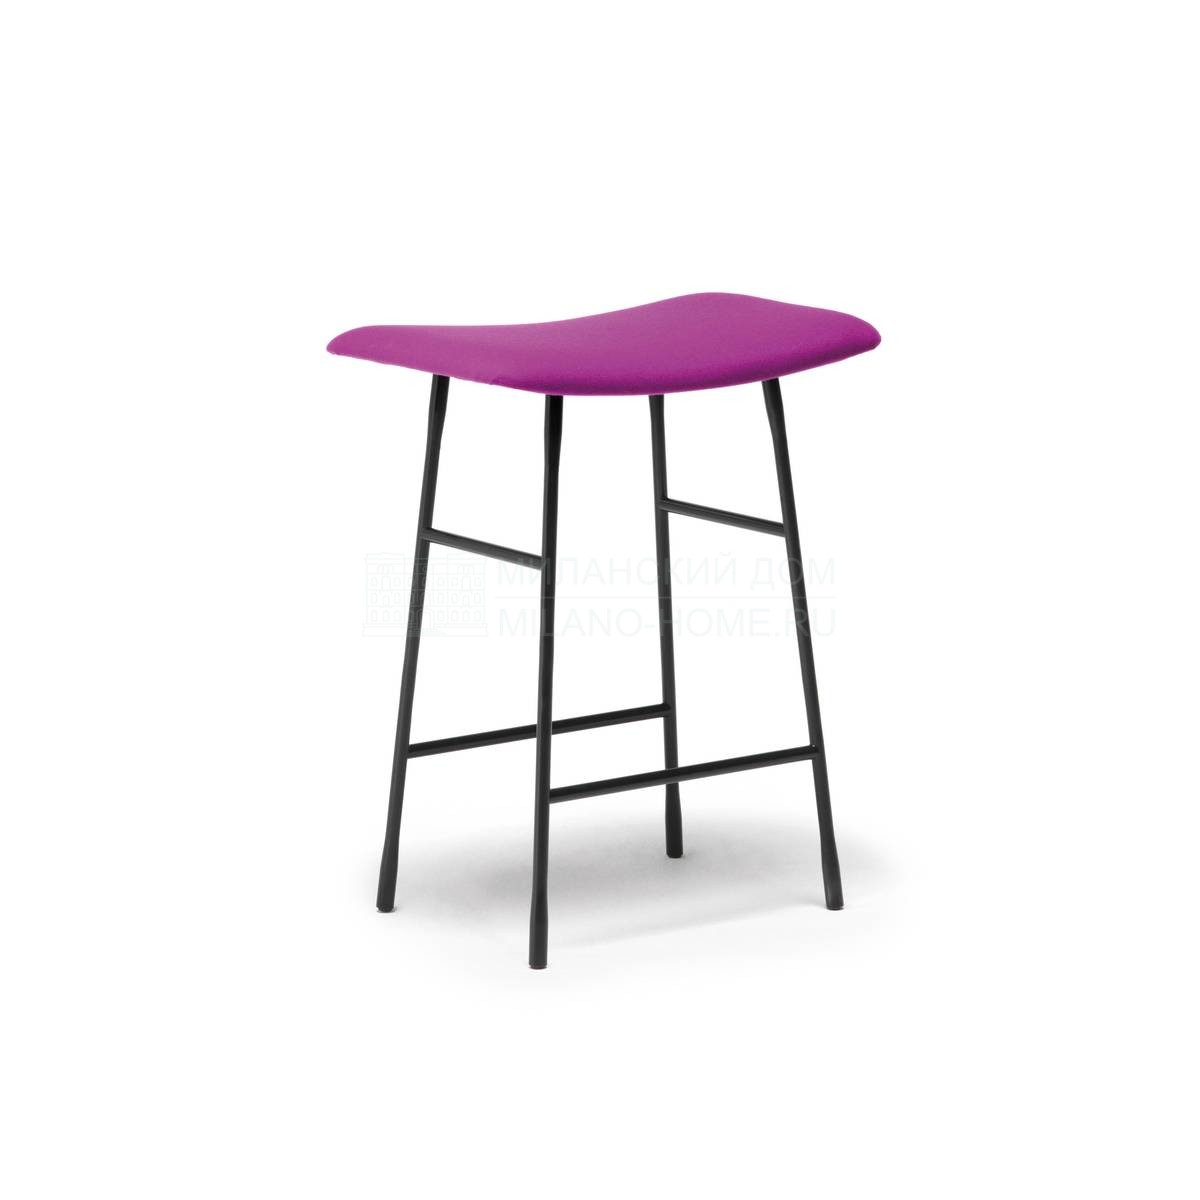 Полубарный стул Hinge bar stool из Италии фабрики LIVING DIVANI